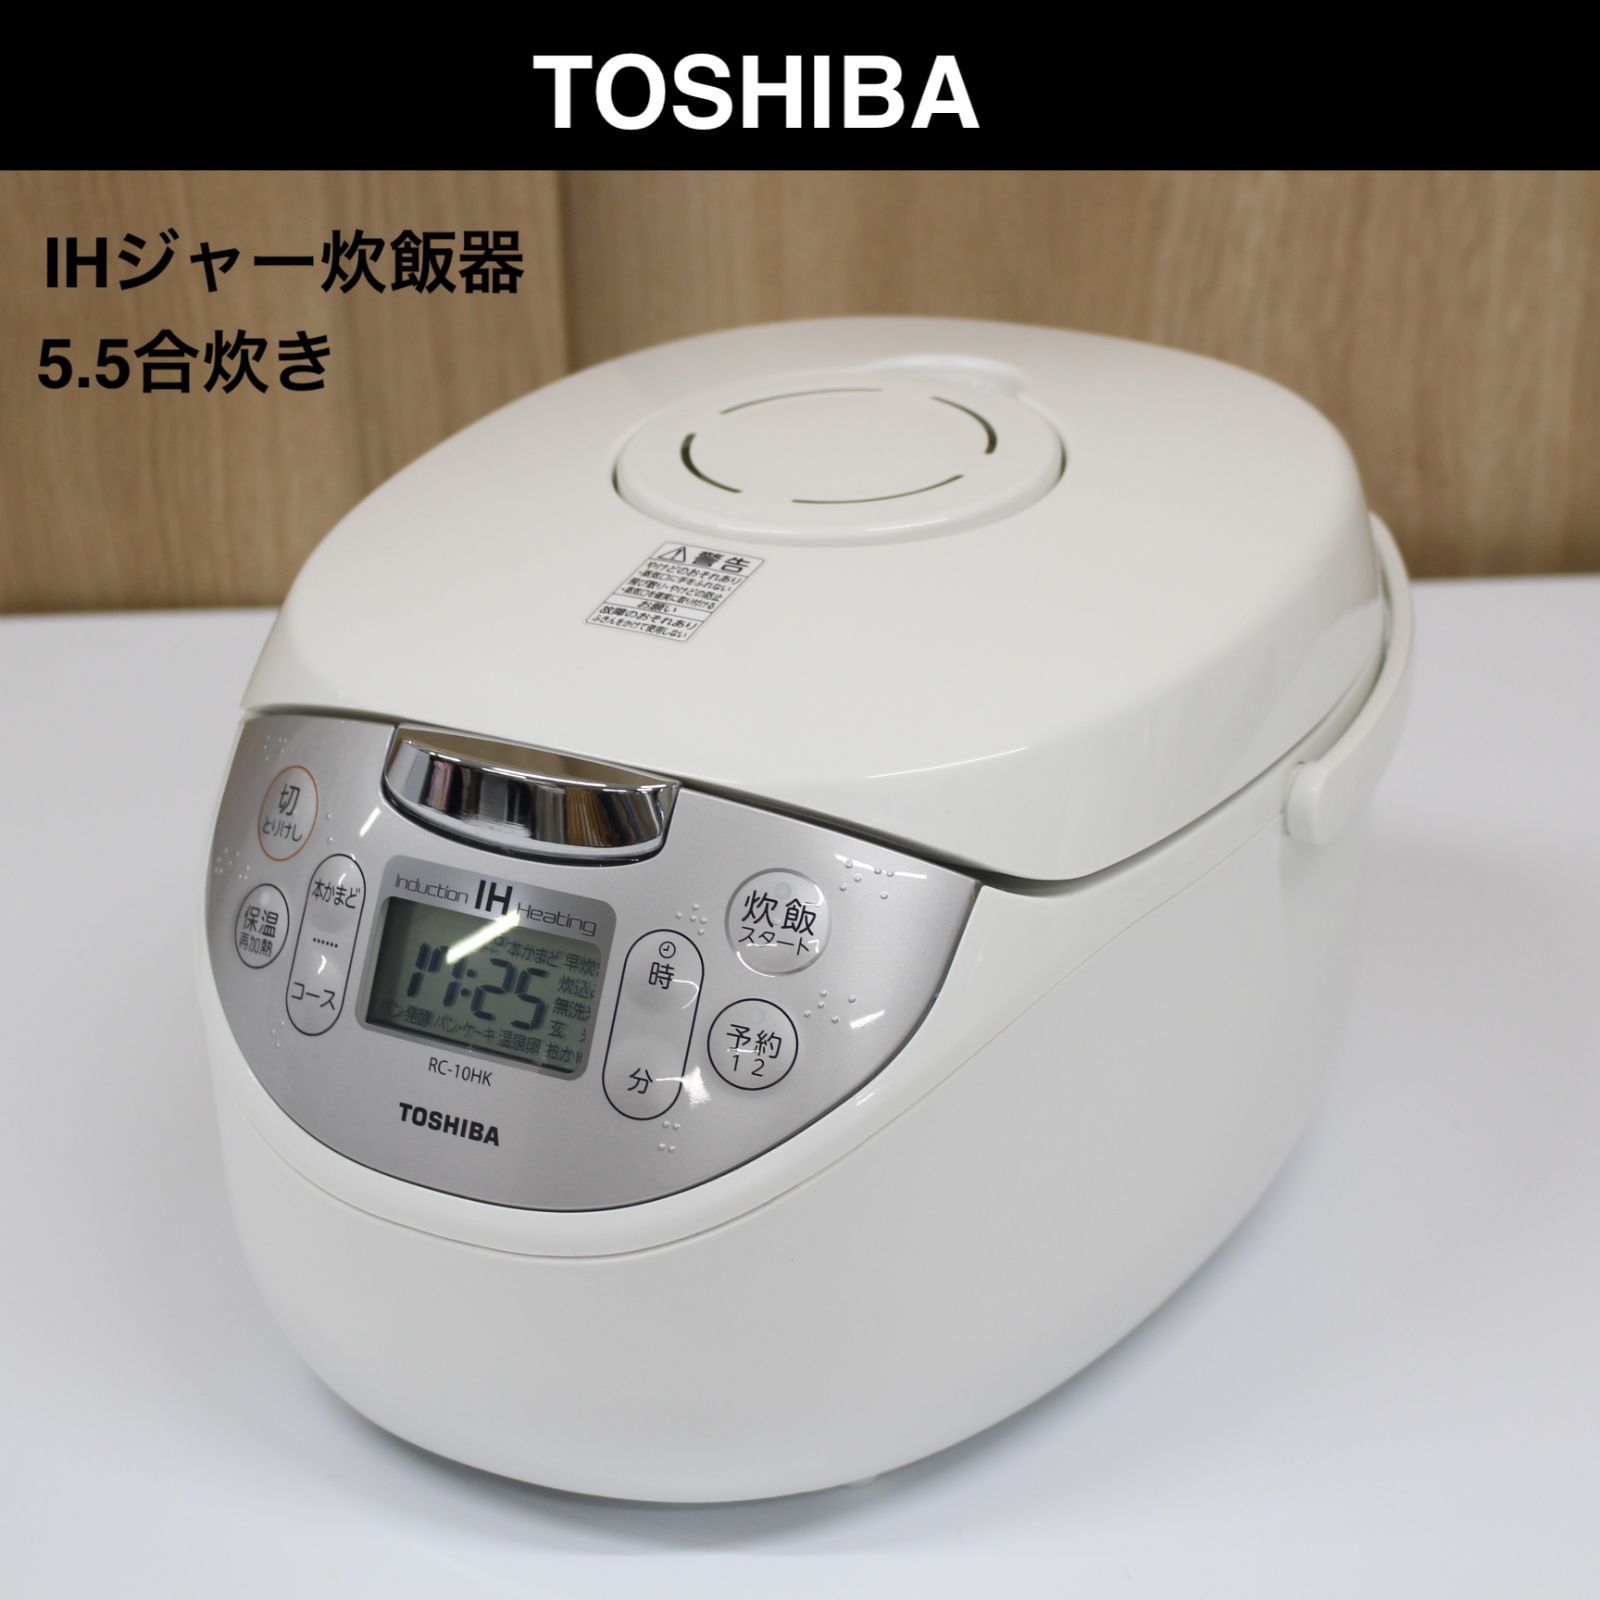 TOSHIBA 東芝 IHジャー炊飯器 RC-10HK